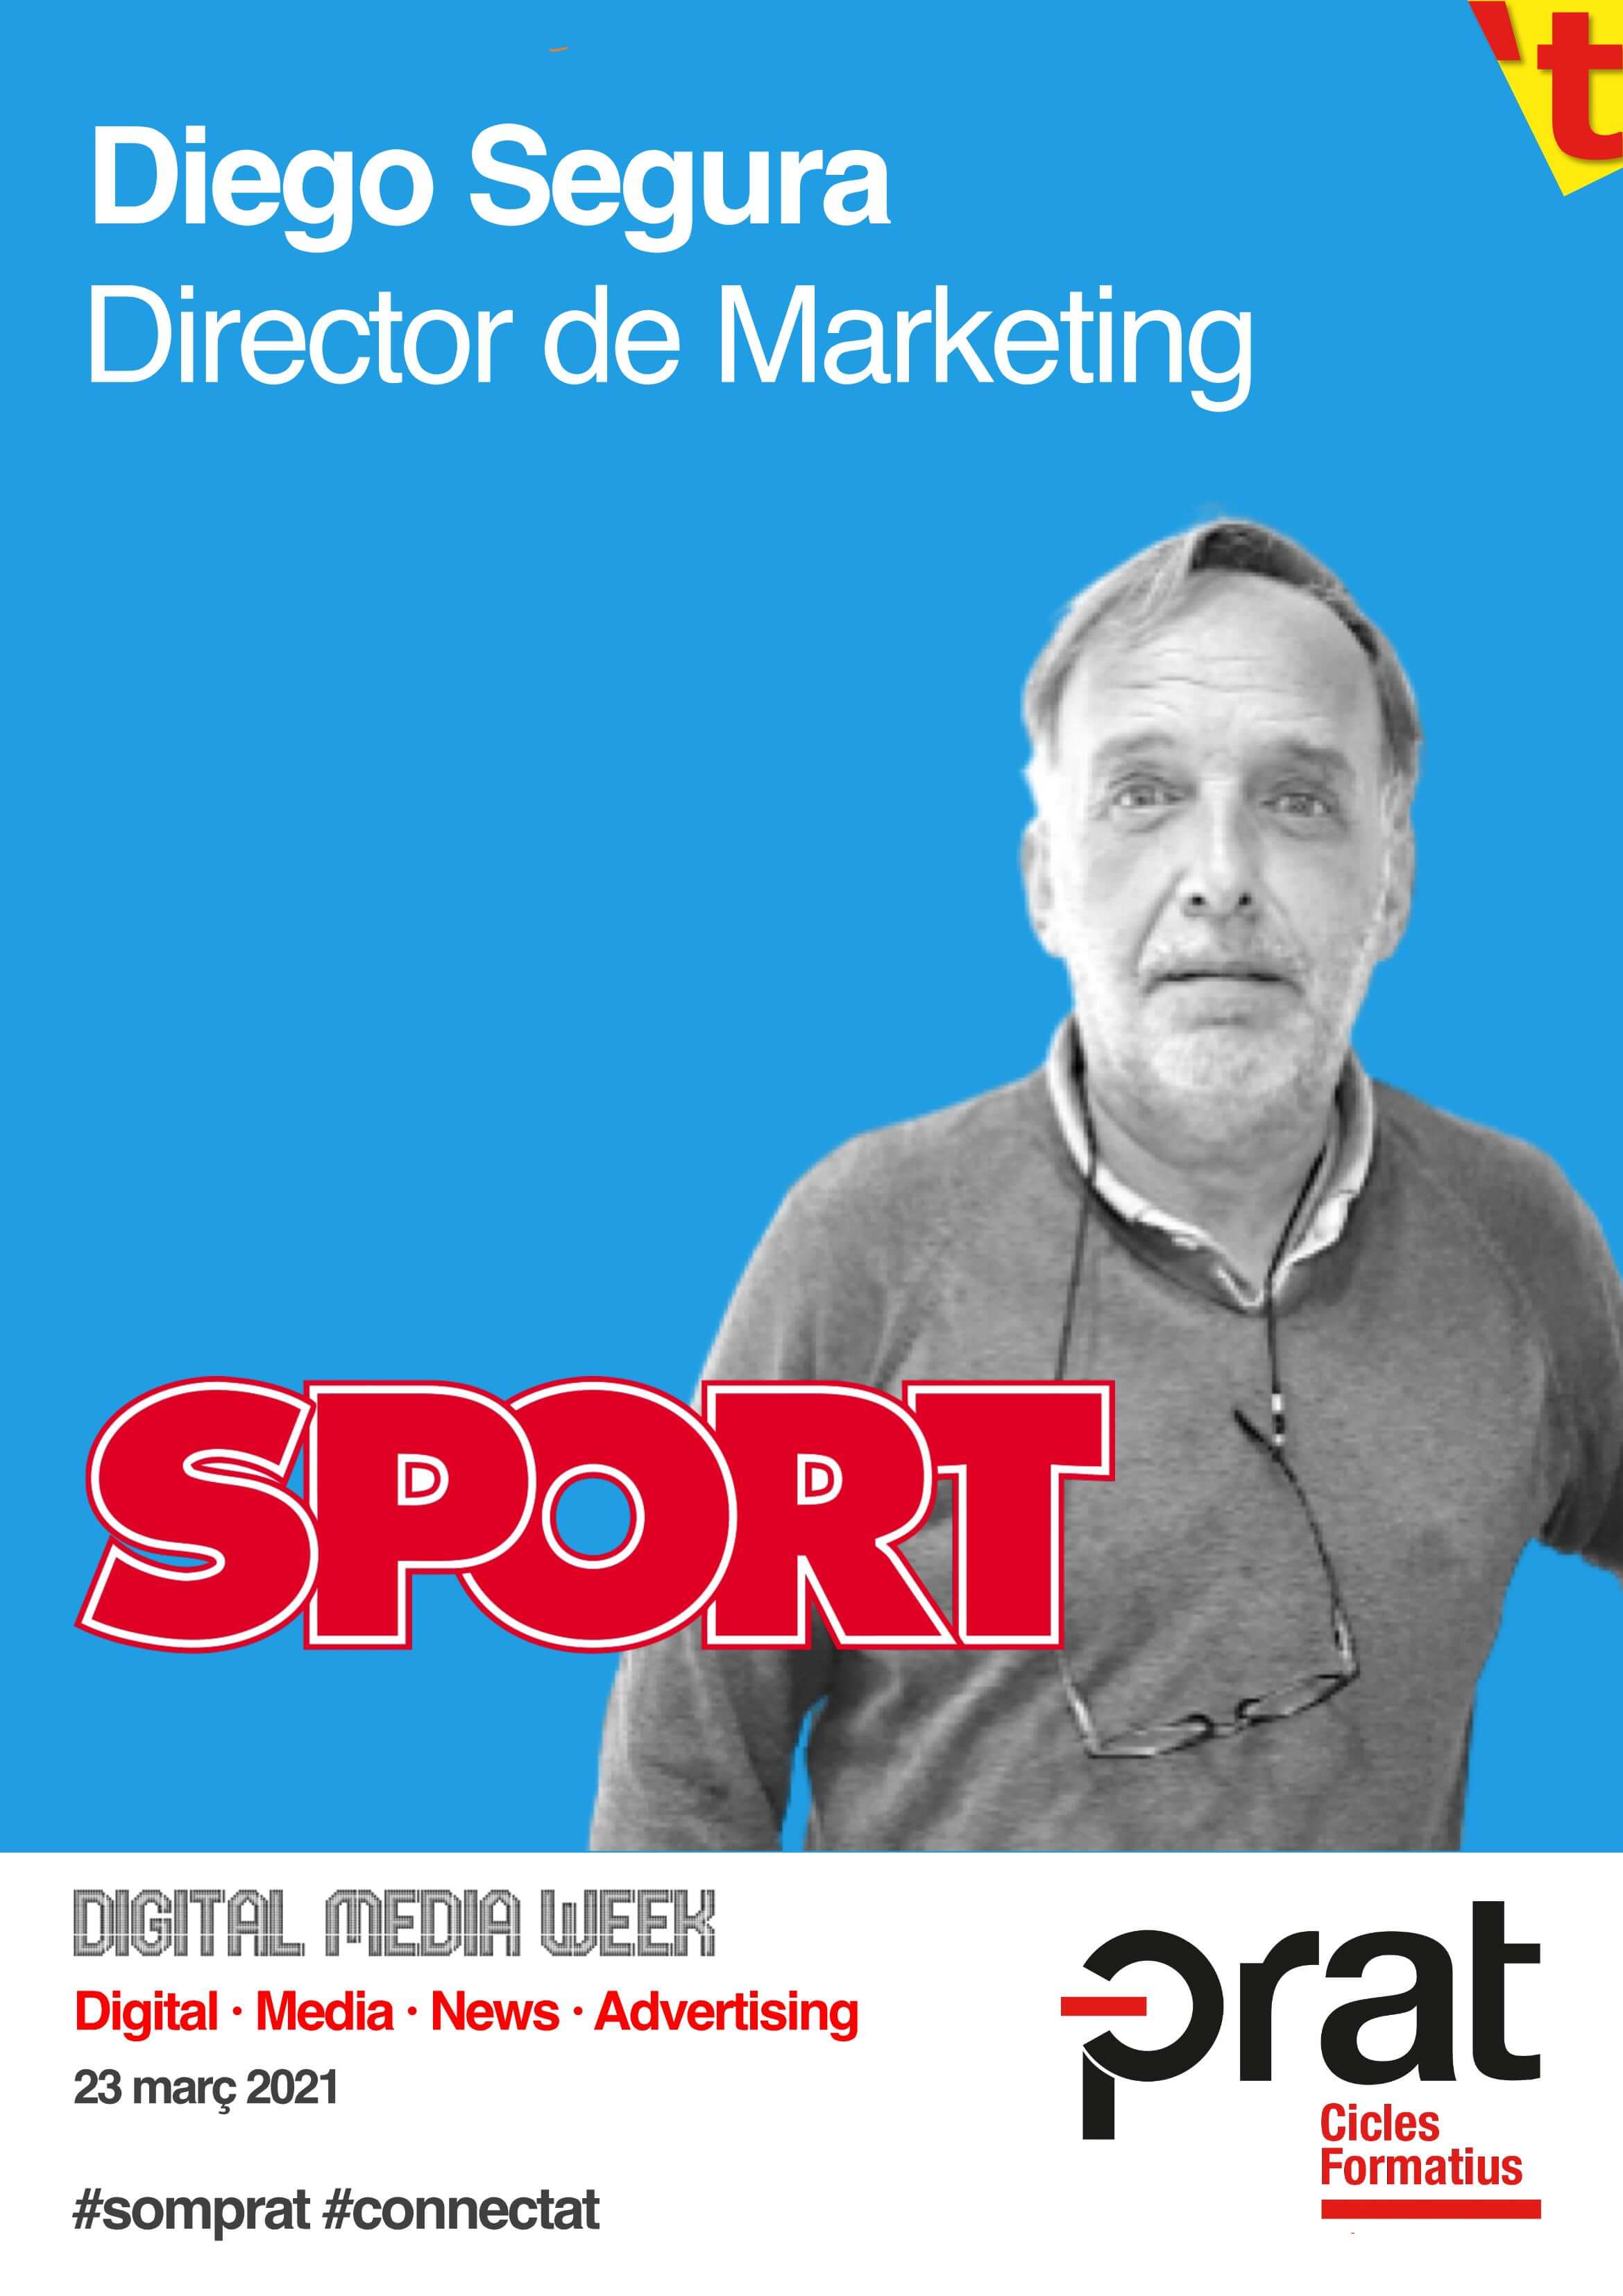 Digital Media Week: Sport - Cicle Formatiu de Grau Superior de Màrqueting i Publicitat a Prat Educació